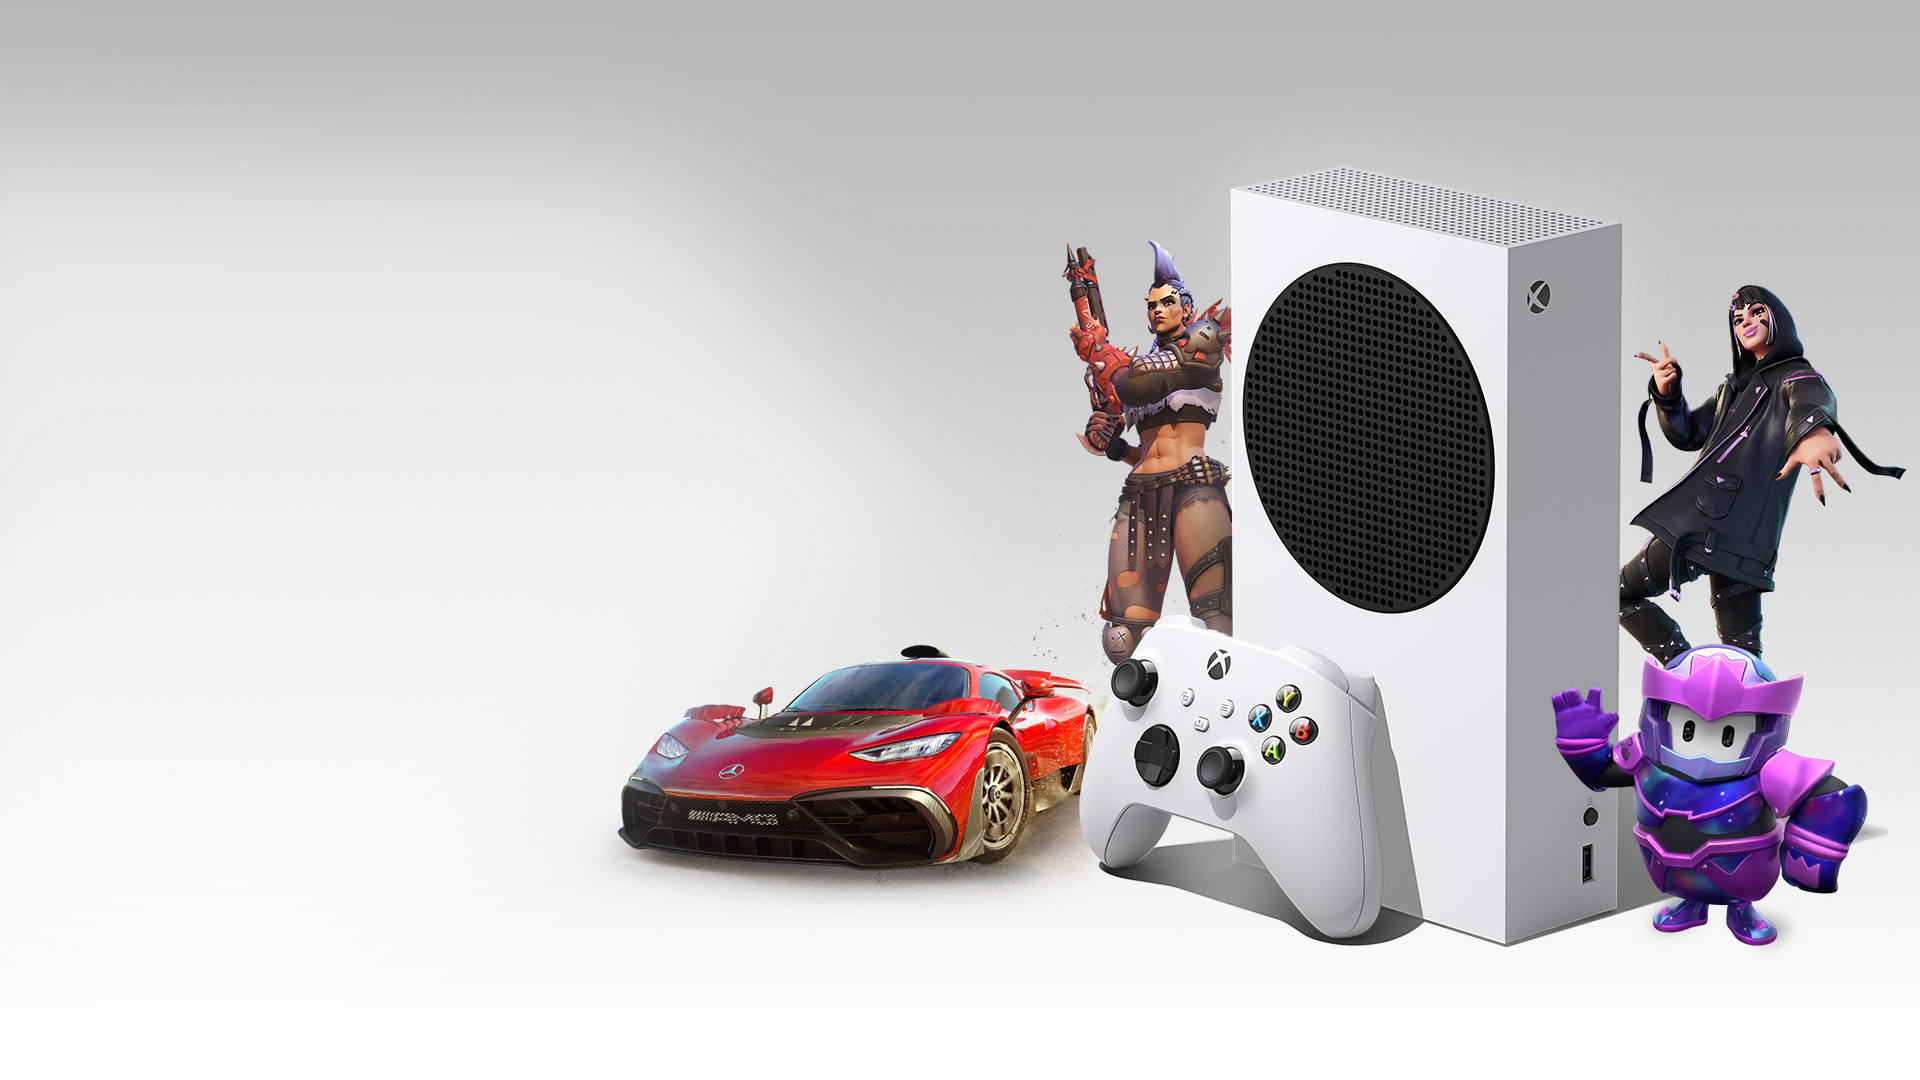 Xbox Series S : déjà des offres à saisir en cette fin de semaine